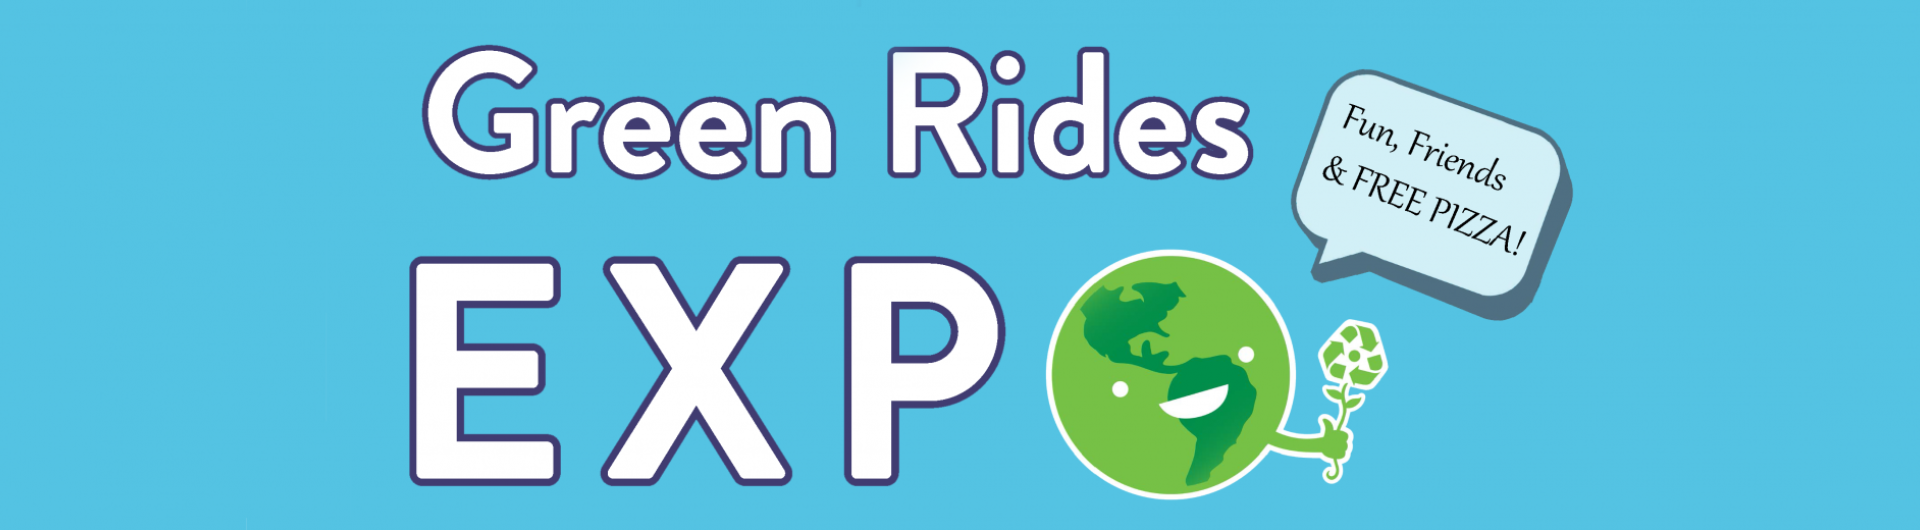 Green Rides Expo